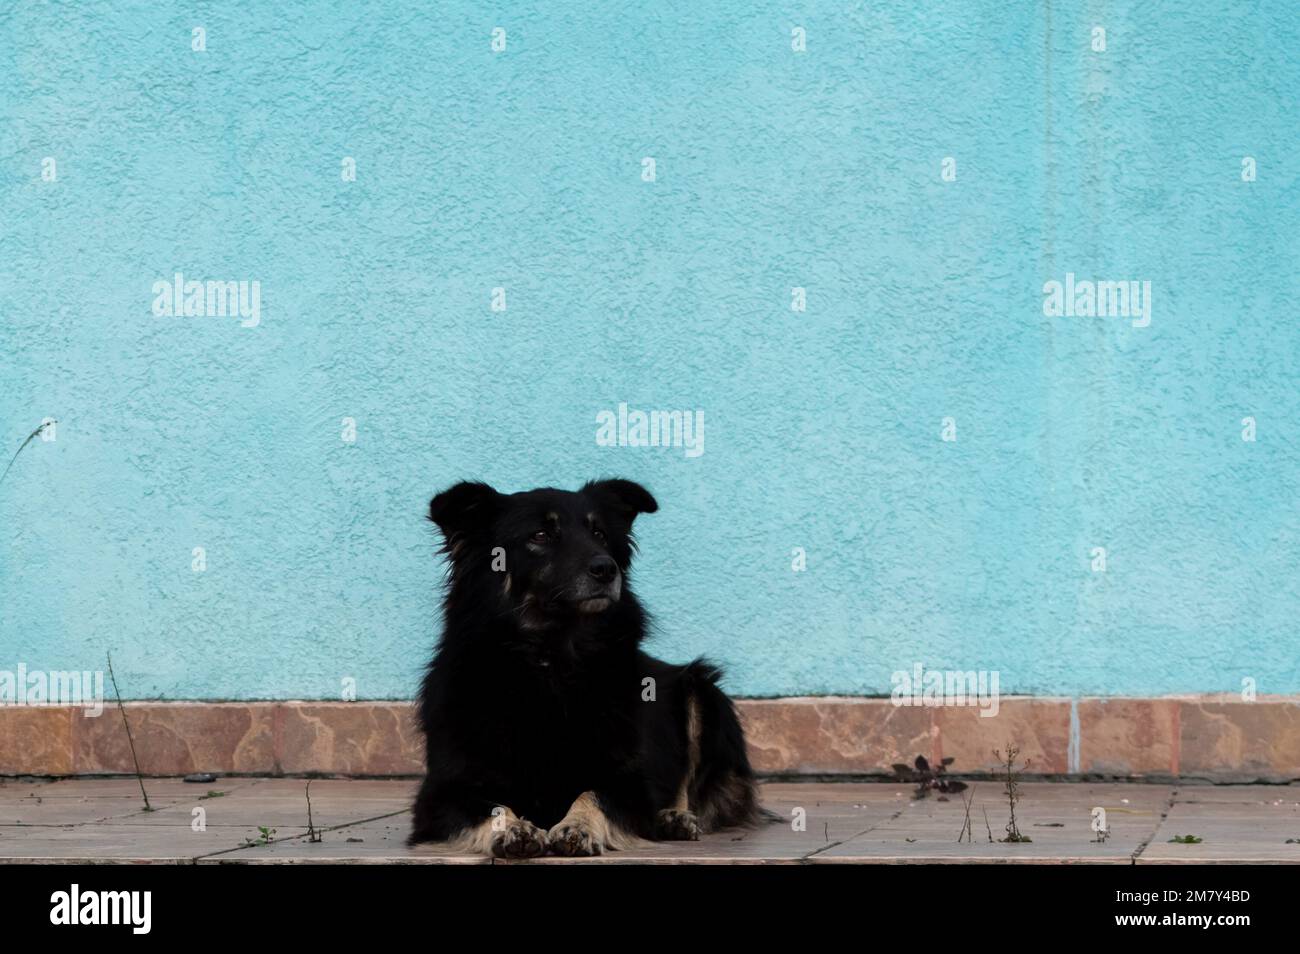 Porträt eines grossen, schwarzen, zackigen Hundes auf dem Hintergrund der azurblauen Mauer im Freien Stockfoto